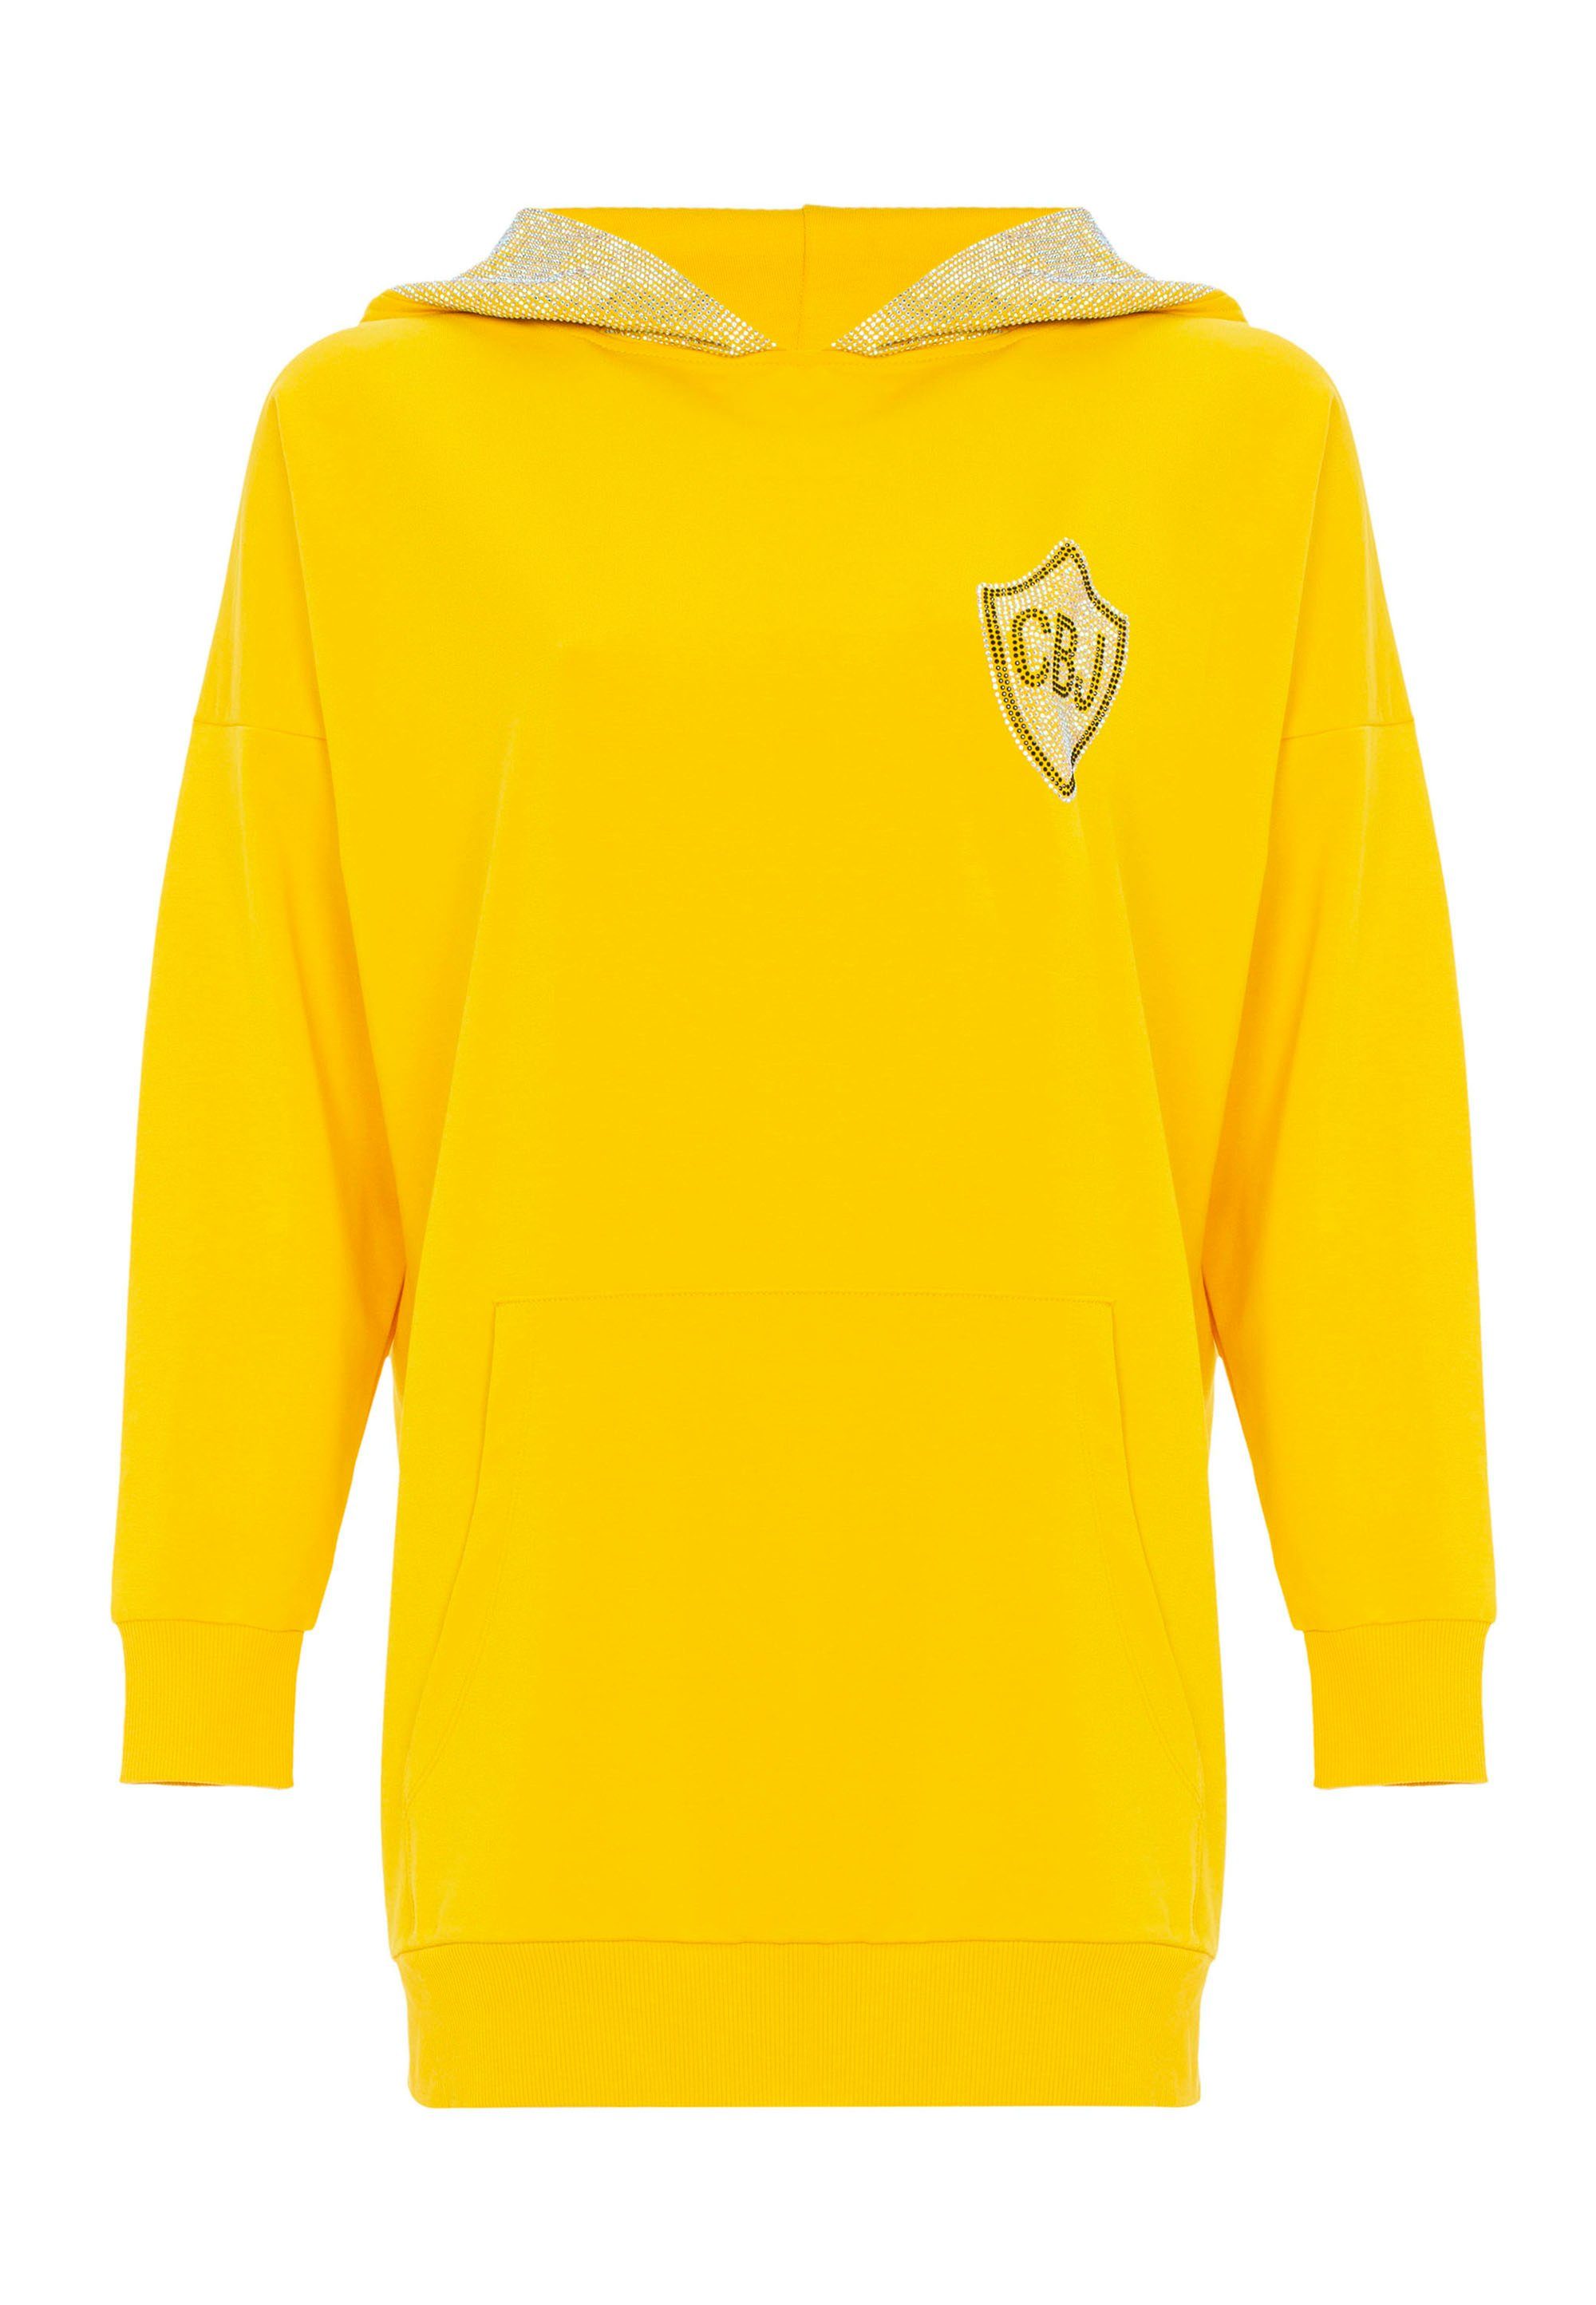 & gelb Jerseykleid mit Cipo aufwendigem Strass-Design Baxx